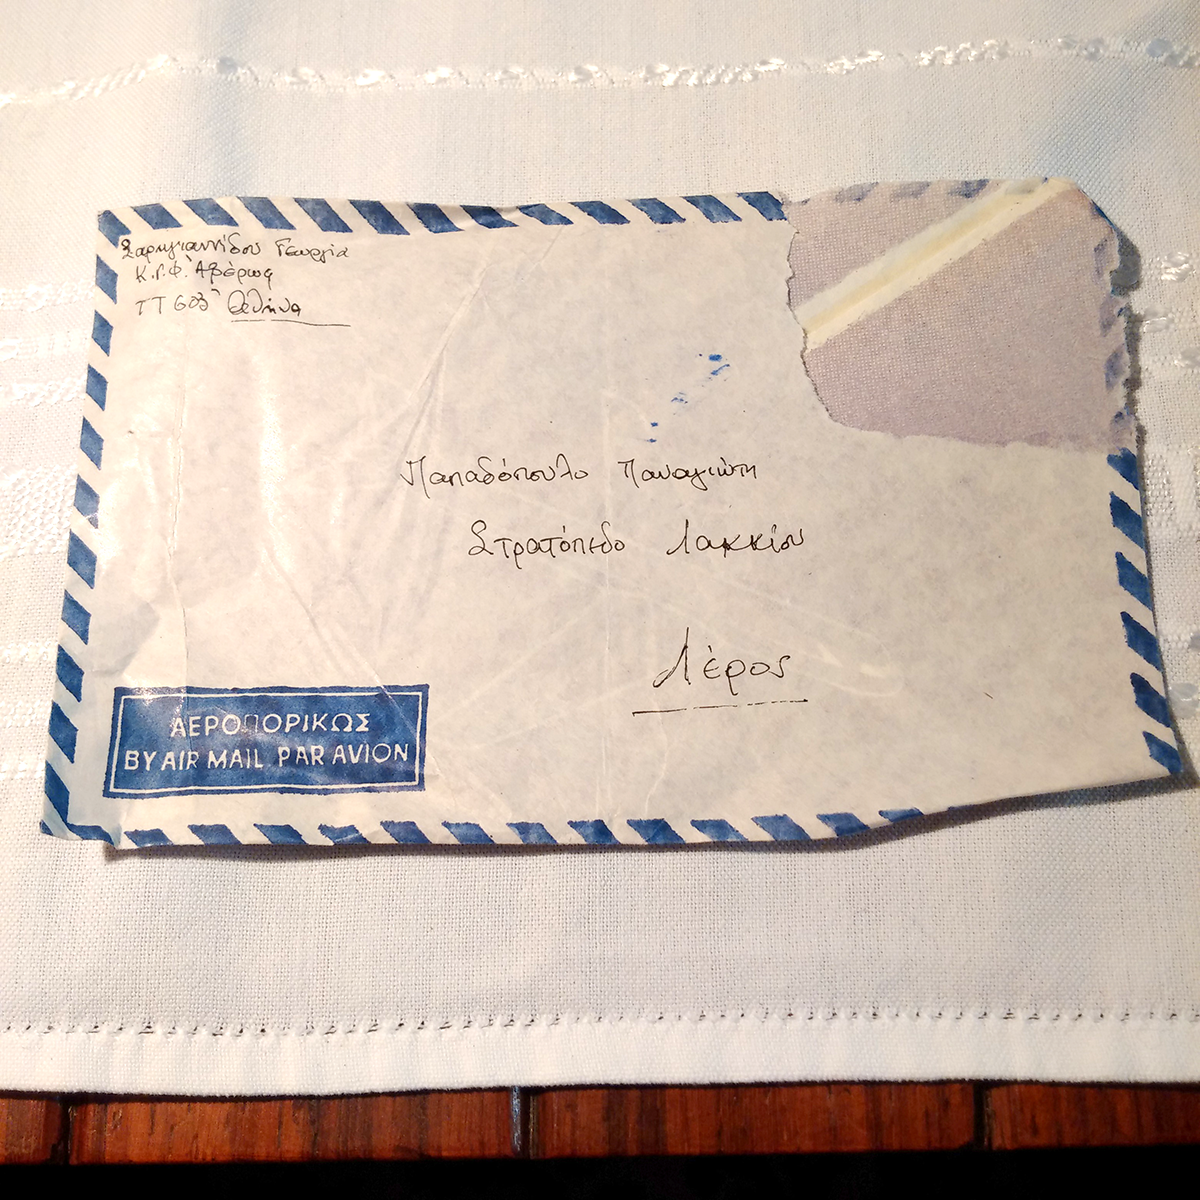 1.Ταχυδρομικός φάκελος από τη Γεωργία Σαρηγιαννίδου, πολιτική κρατούμενη στις Γυναικείες Φυλακές Αβέρωφ, προς τον Π. Παπαδόπουλο, πολιτικό εξόριστο στο Λακκί